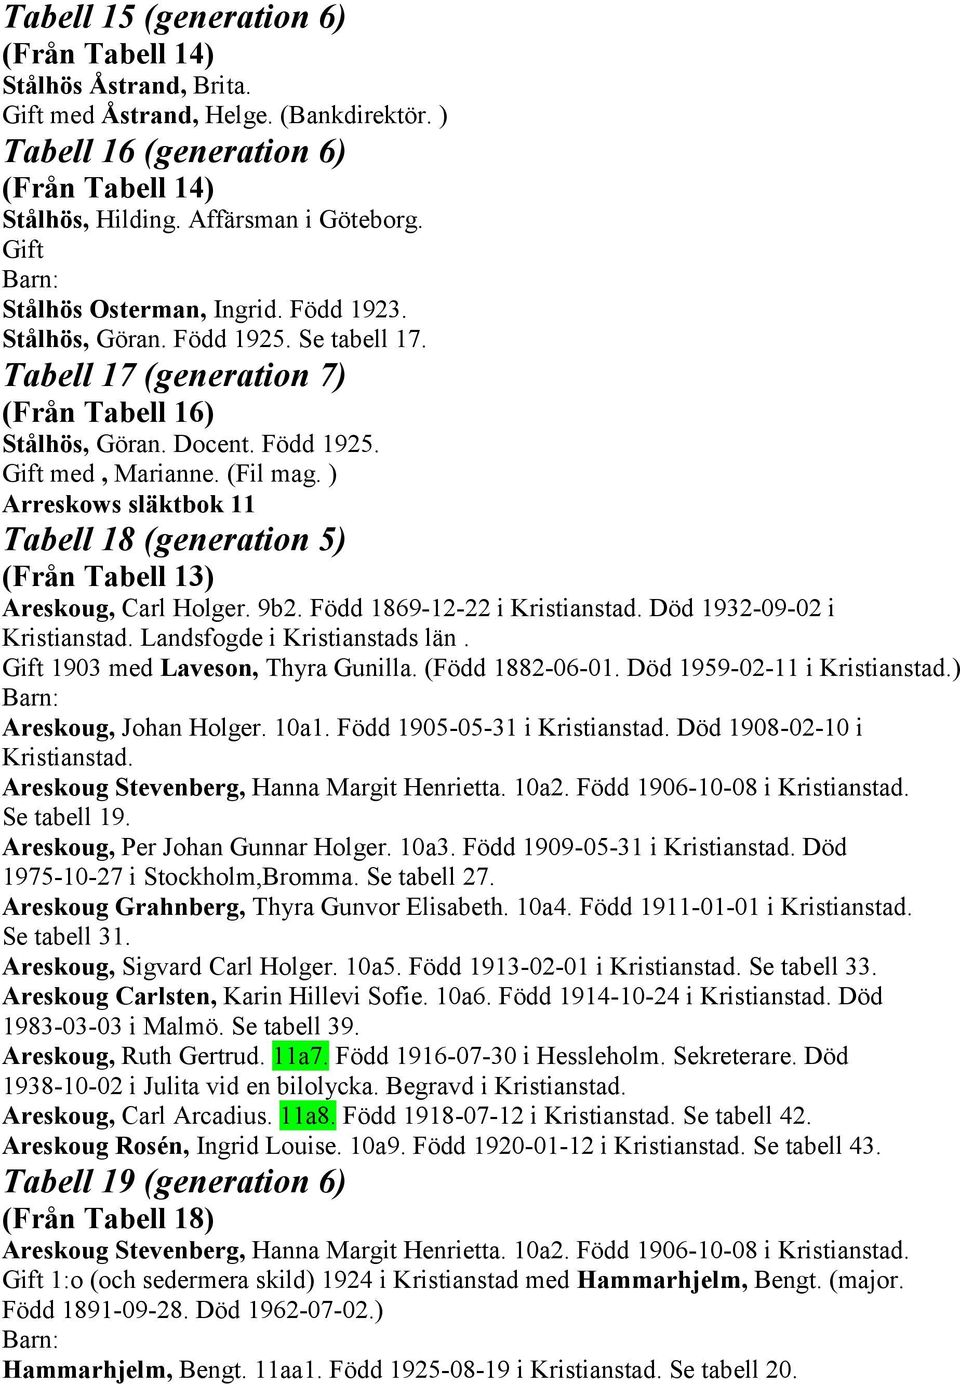 ) Arreskows släktbok 11 Tabell 18 (generation 5) (Från Tabell 13) Areskoug, Carl Holger. 9b2. Född 1869-12-22 i Kristianstad. Död 1932-09-02 i Kristianstad. Landsfogde i Kristianstads län.